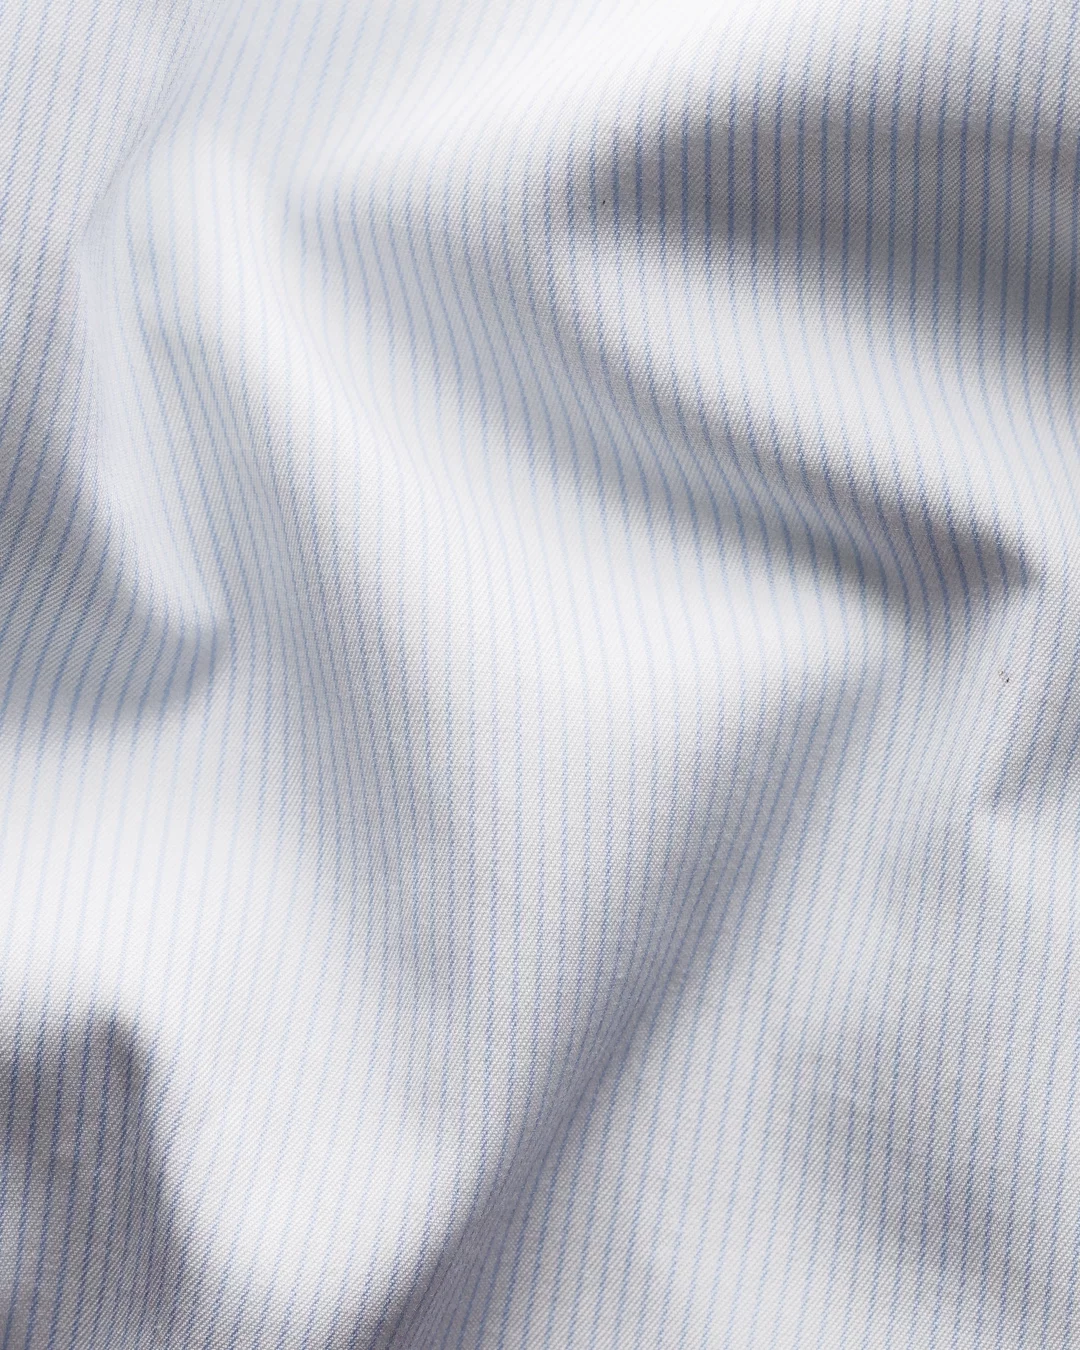 White Cotton Twill Fabric